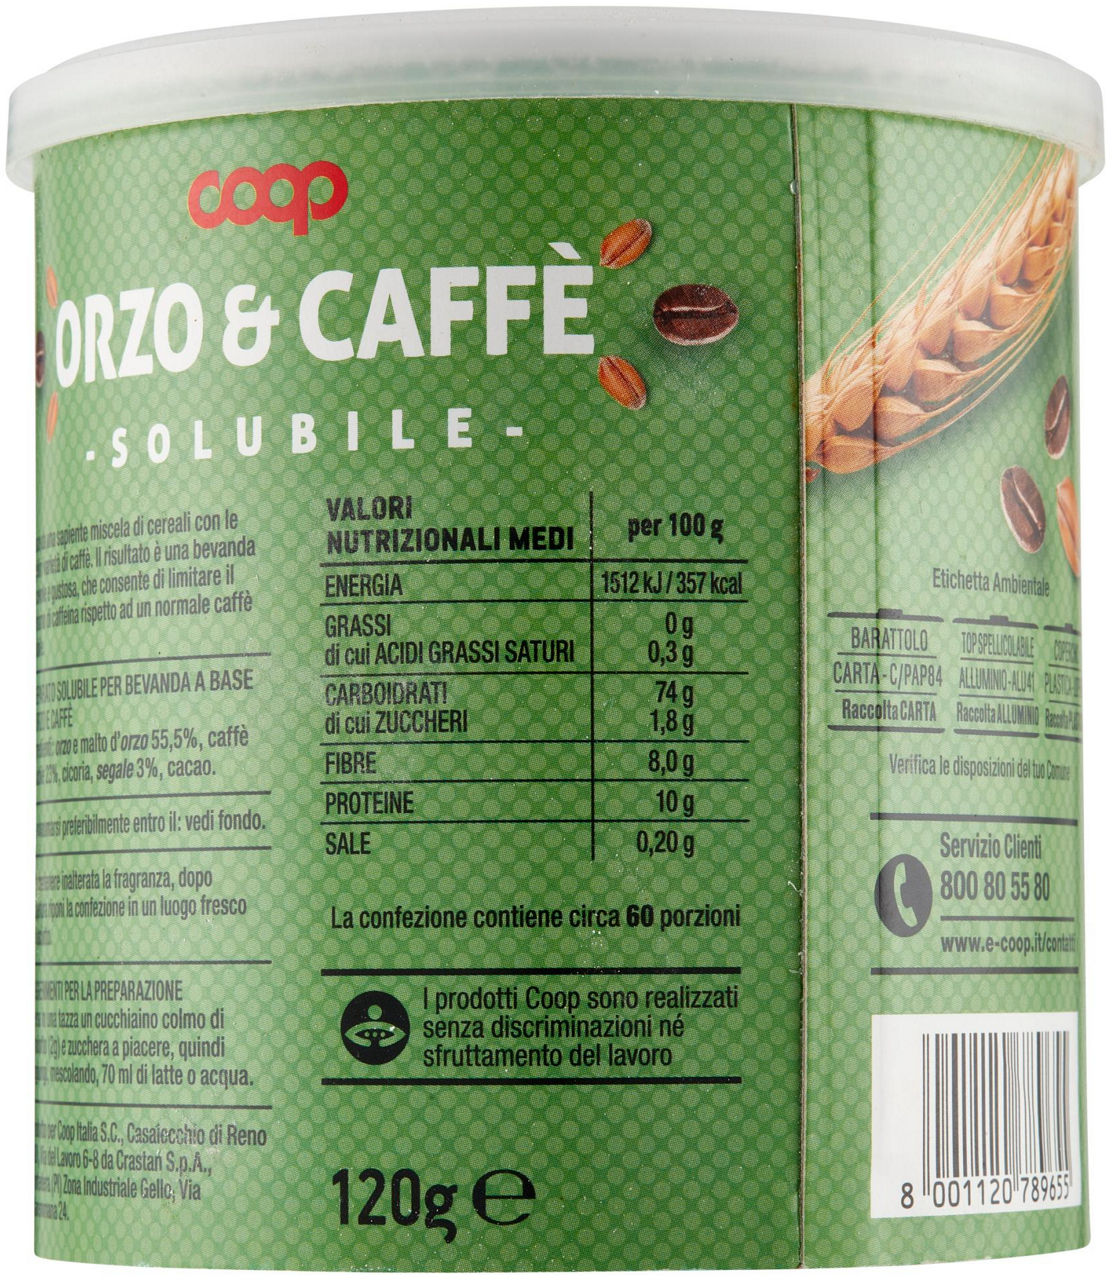 Orzo e Caffè solubile 120 g - 2